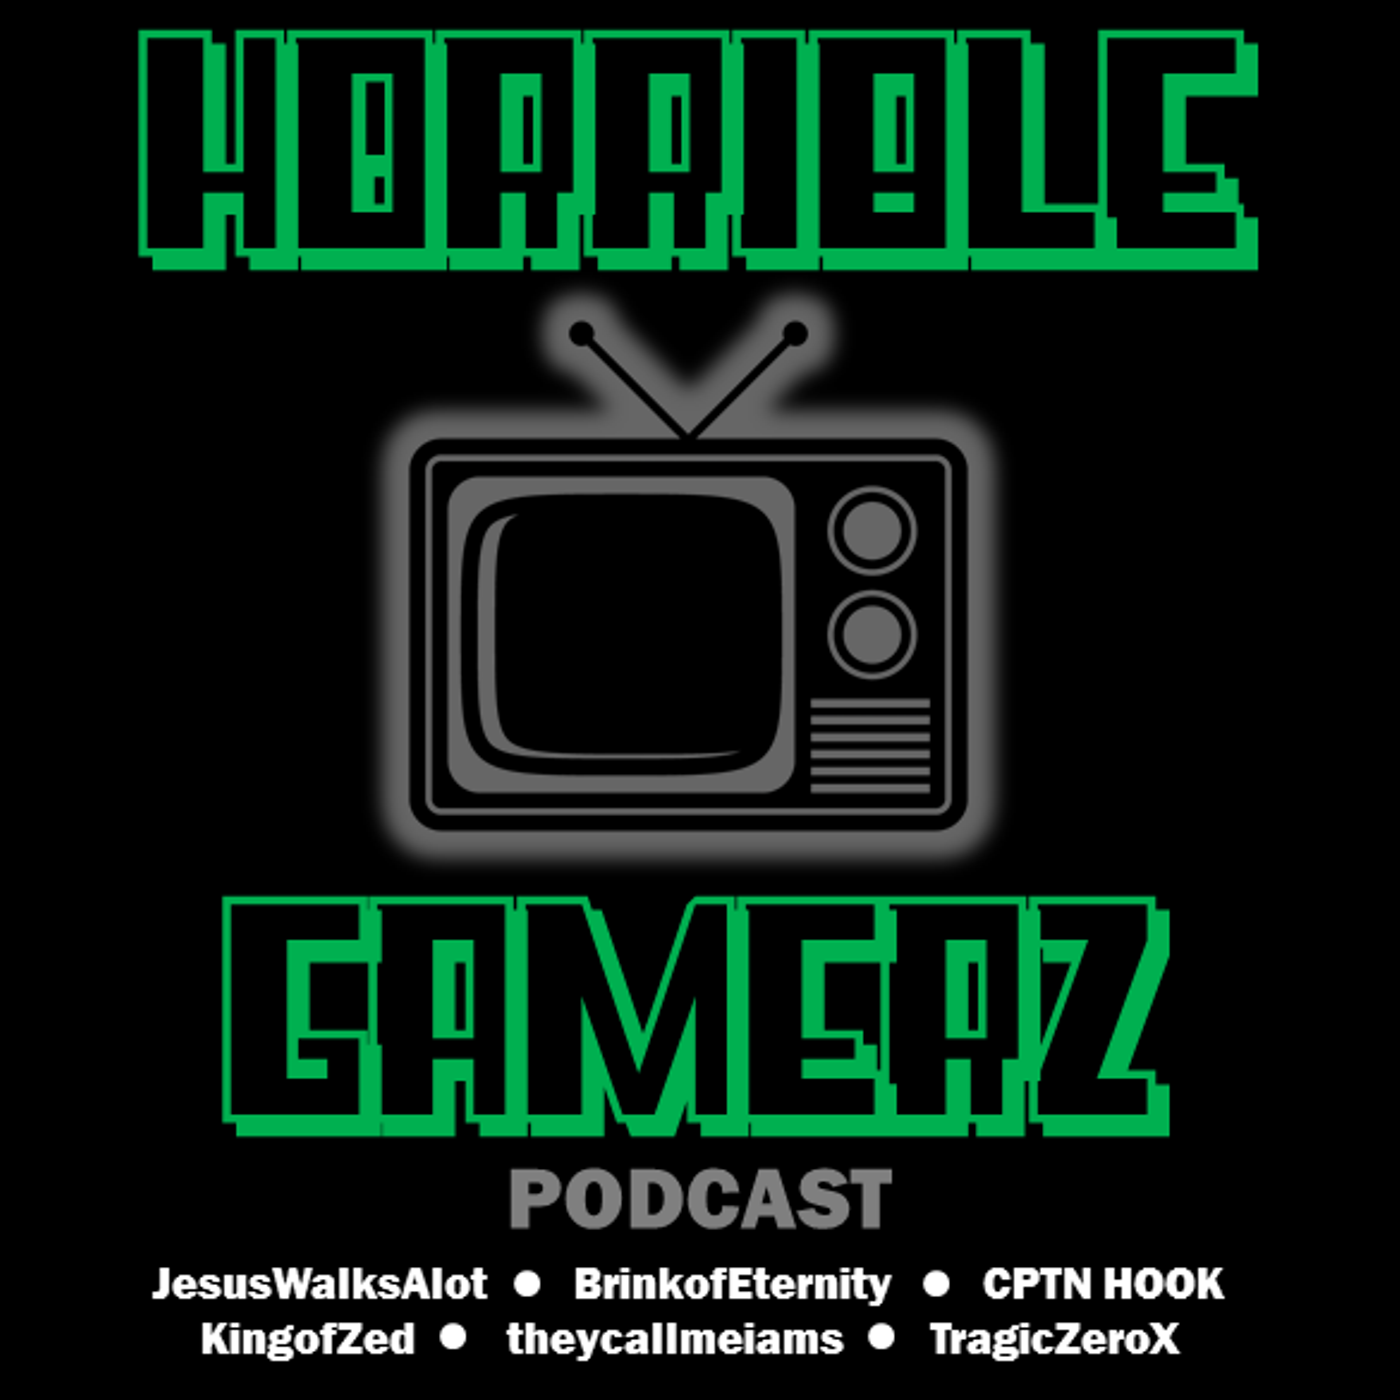 Horrible Gamerz Episode 37 - Awful Interruptionz